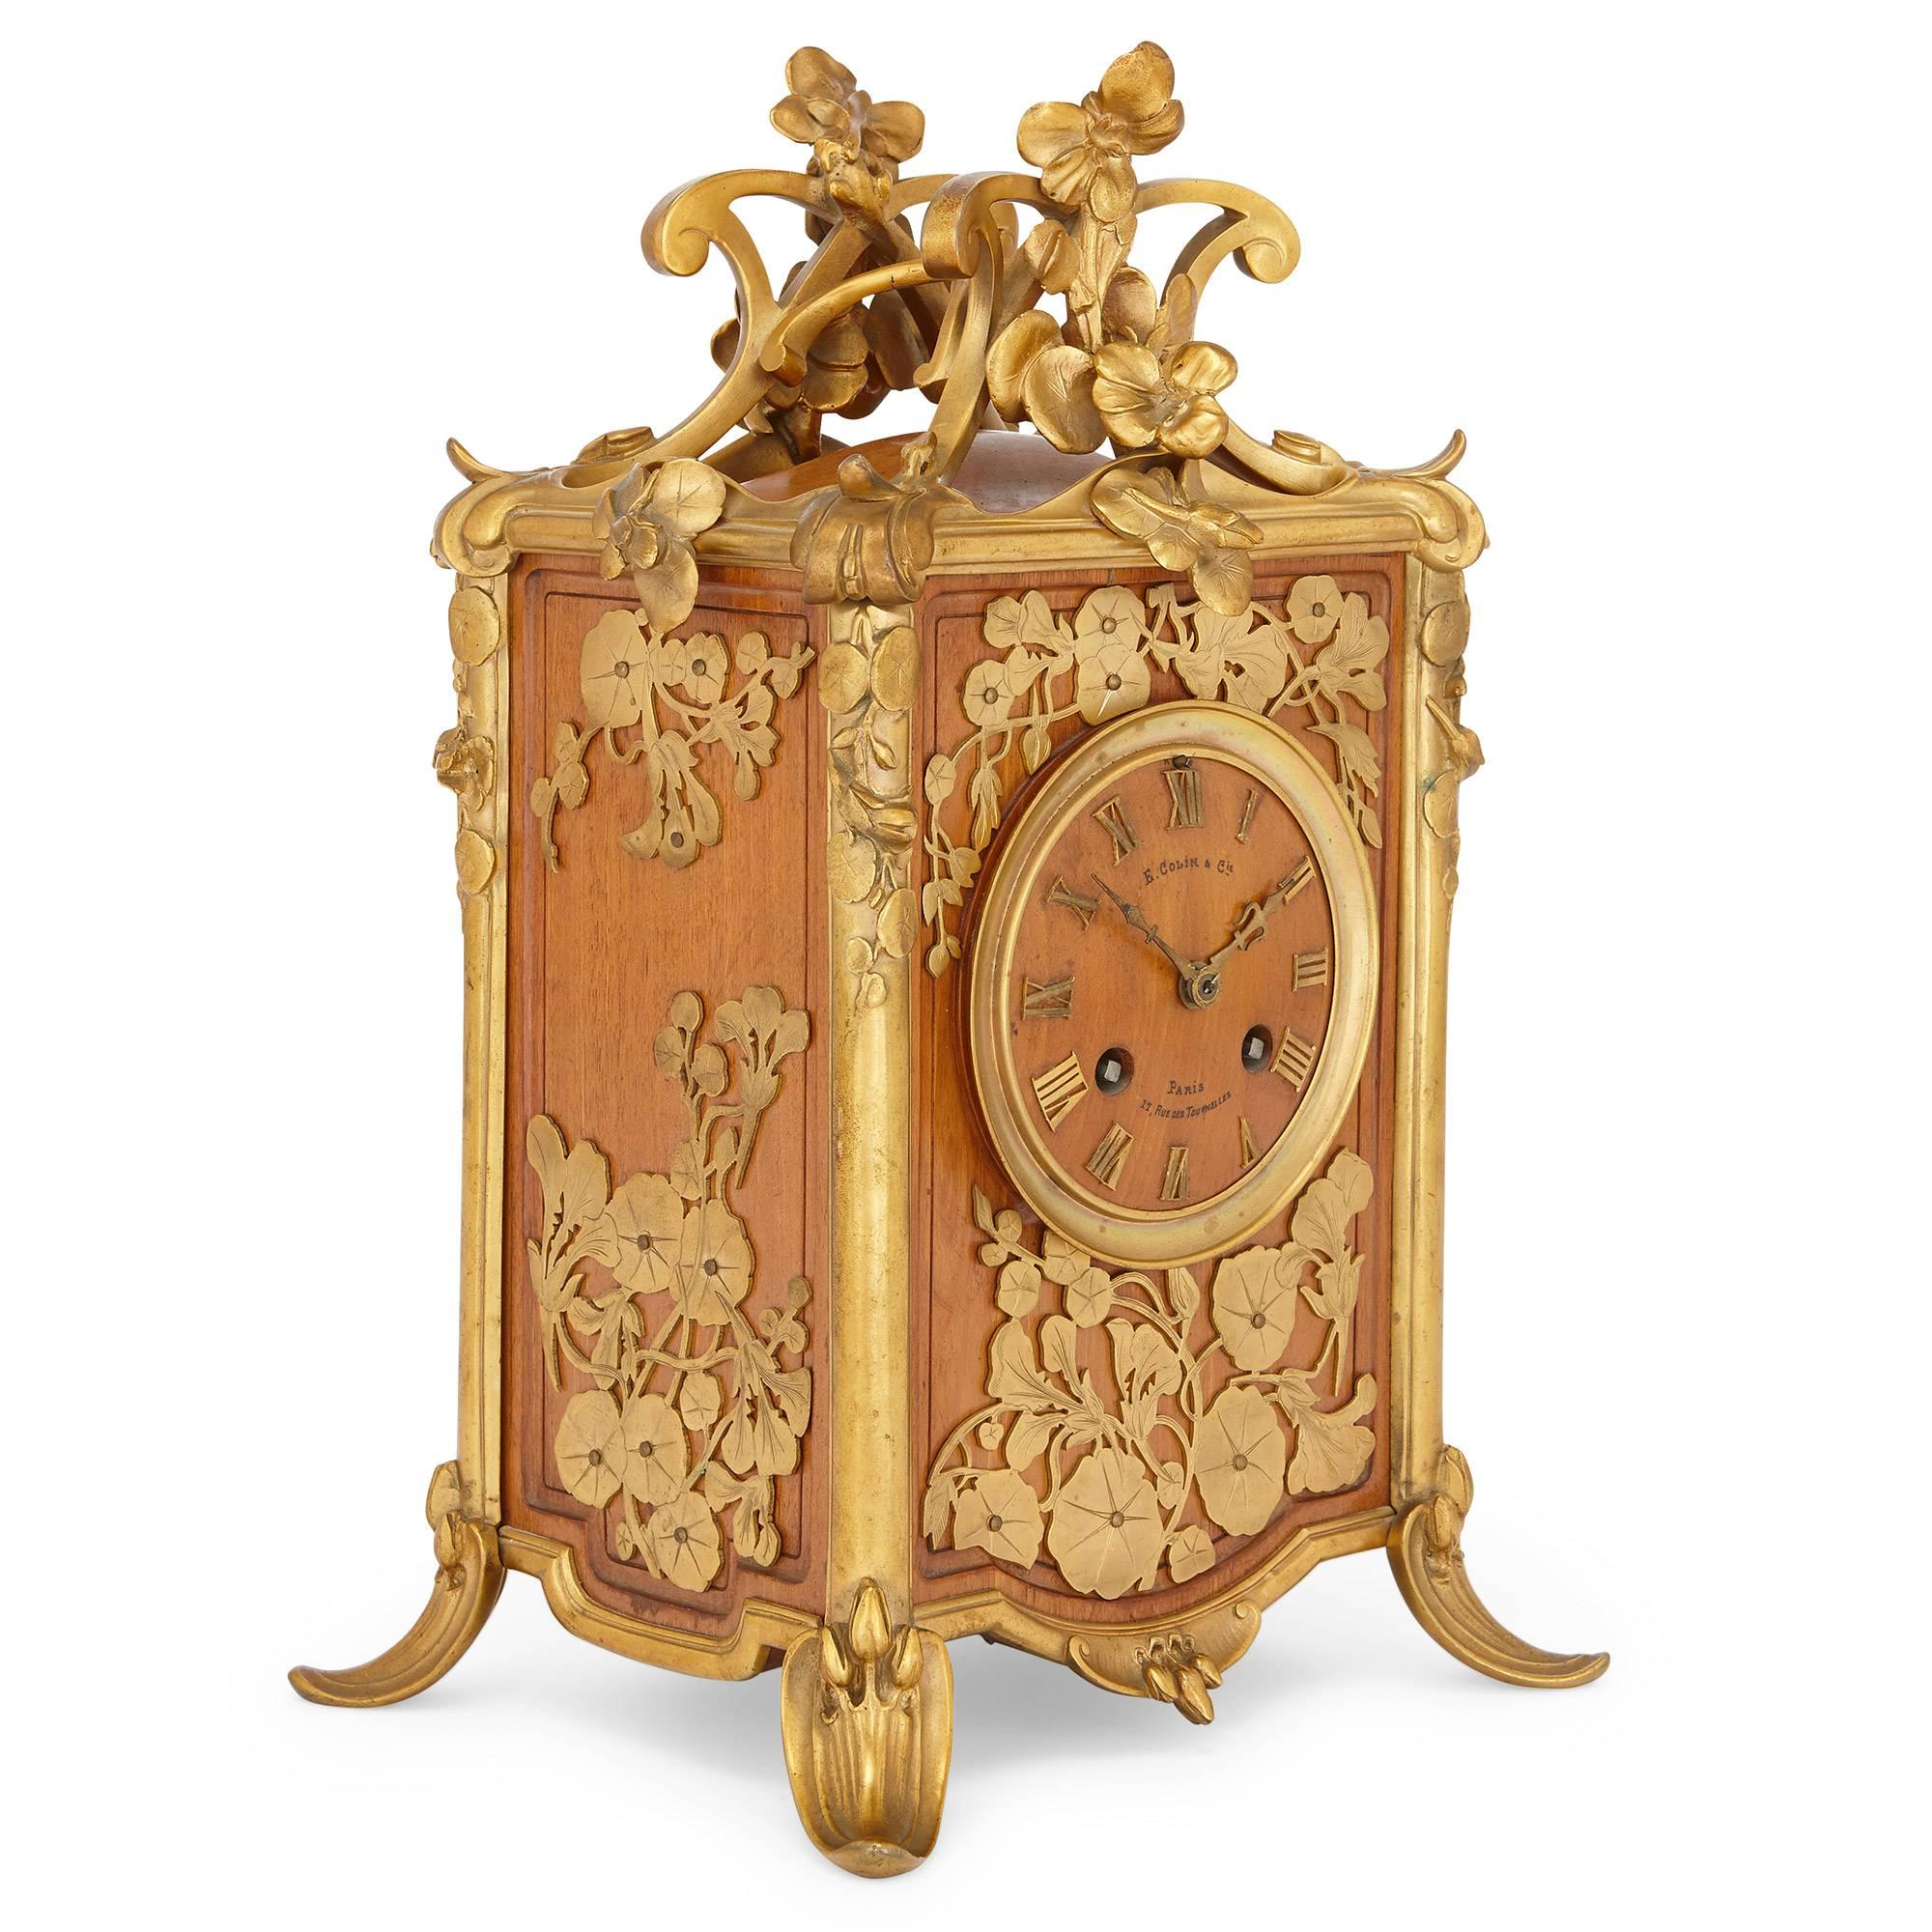 Cette élégante horloge de cheminée ancienne, de la période de l'Art nouveau, est placée dans un beau coffret rectangulaire en bois, orné de bordures en bronze doré (ormolu) et de décorations florales.

La pendule a été fabriquée par le célèbre